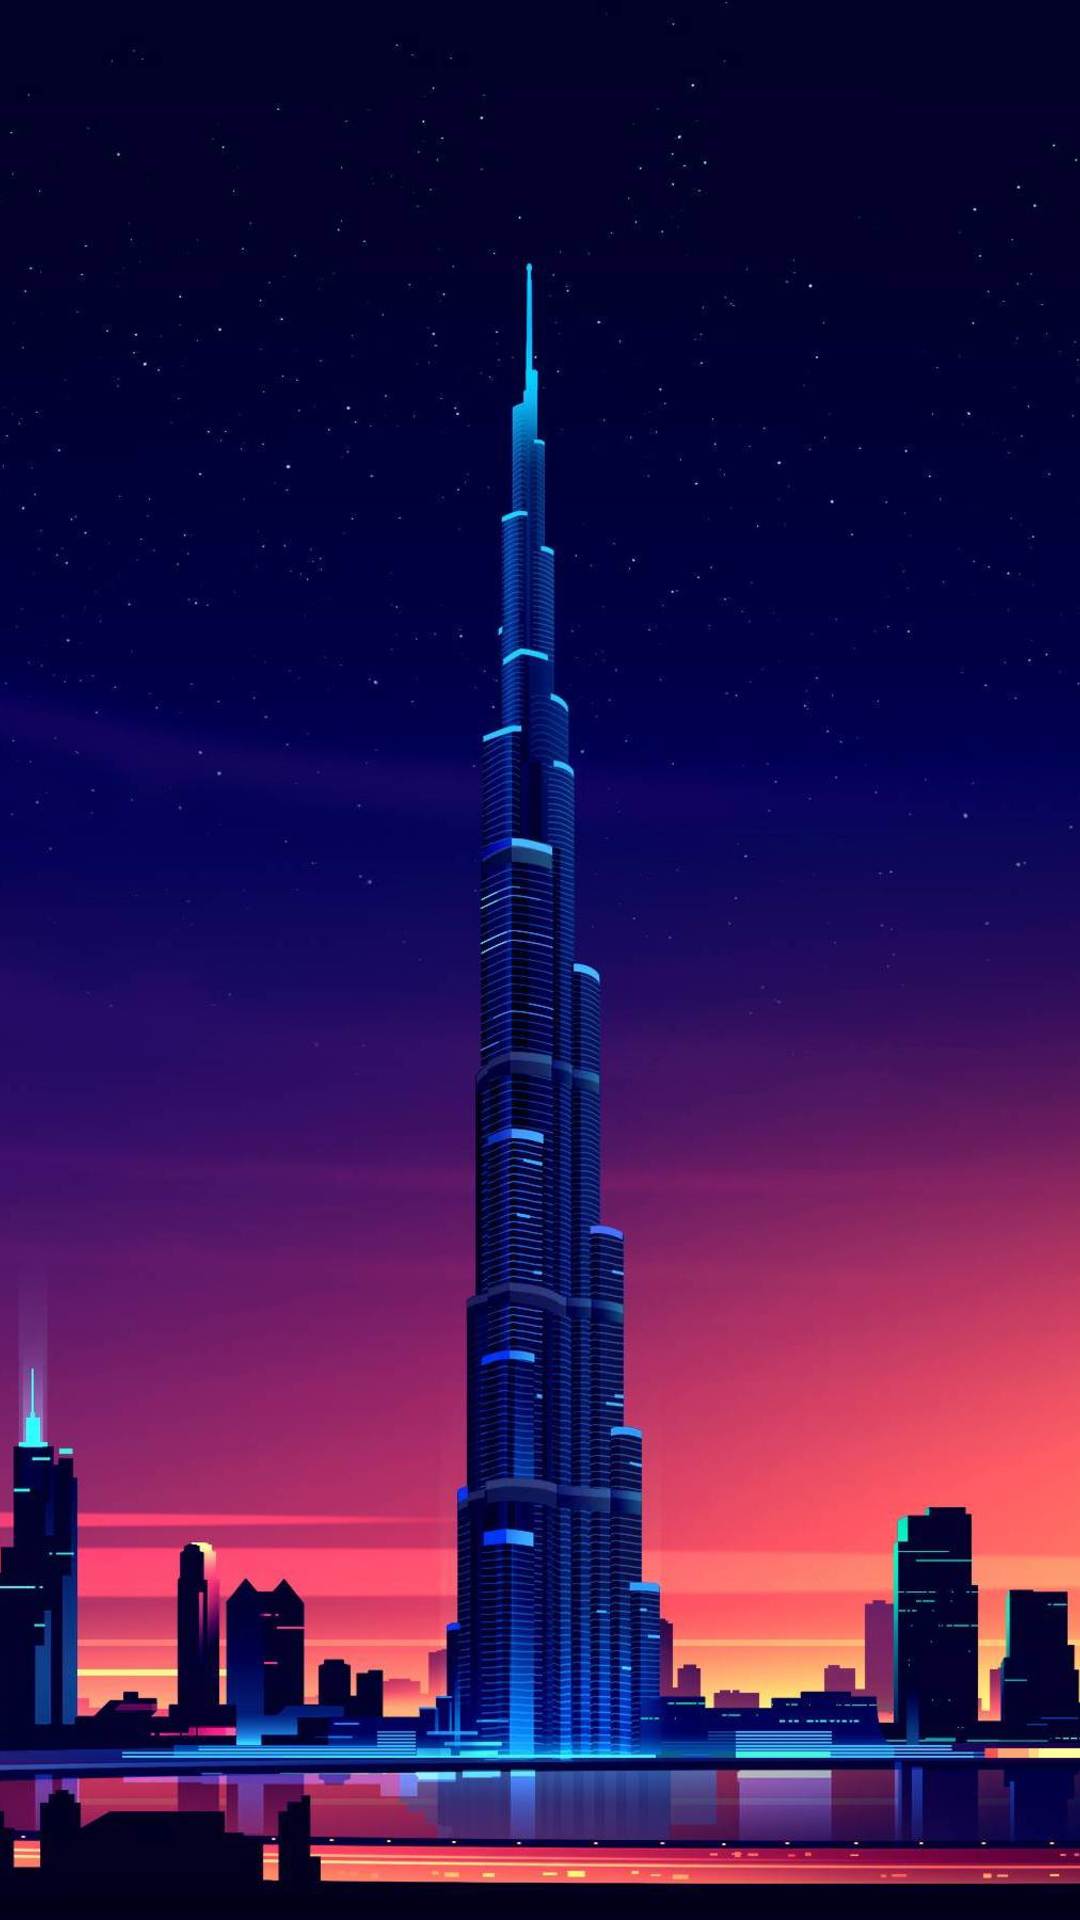 Dubai Burj Khalifa Minimalist iPhone 6s, 6 Plus, Pixel xl